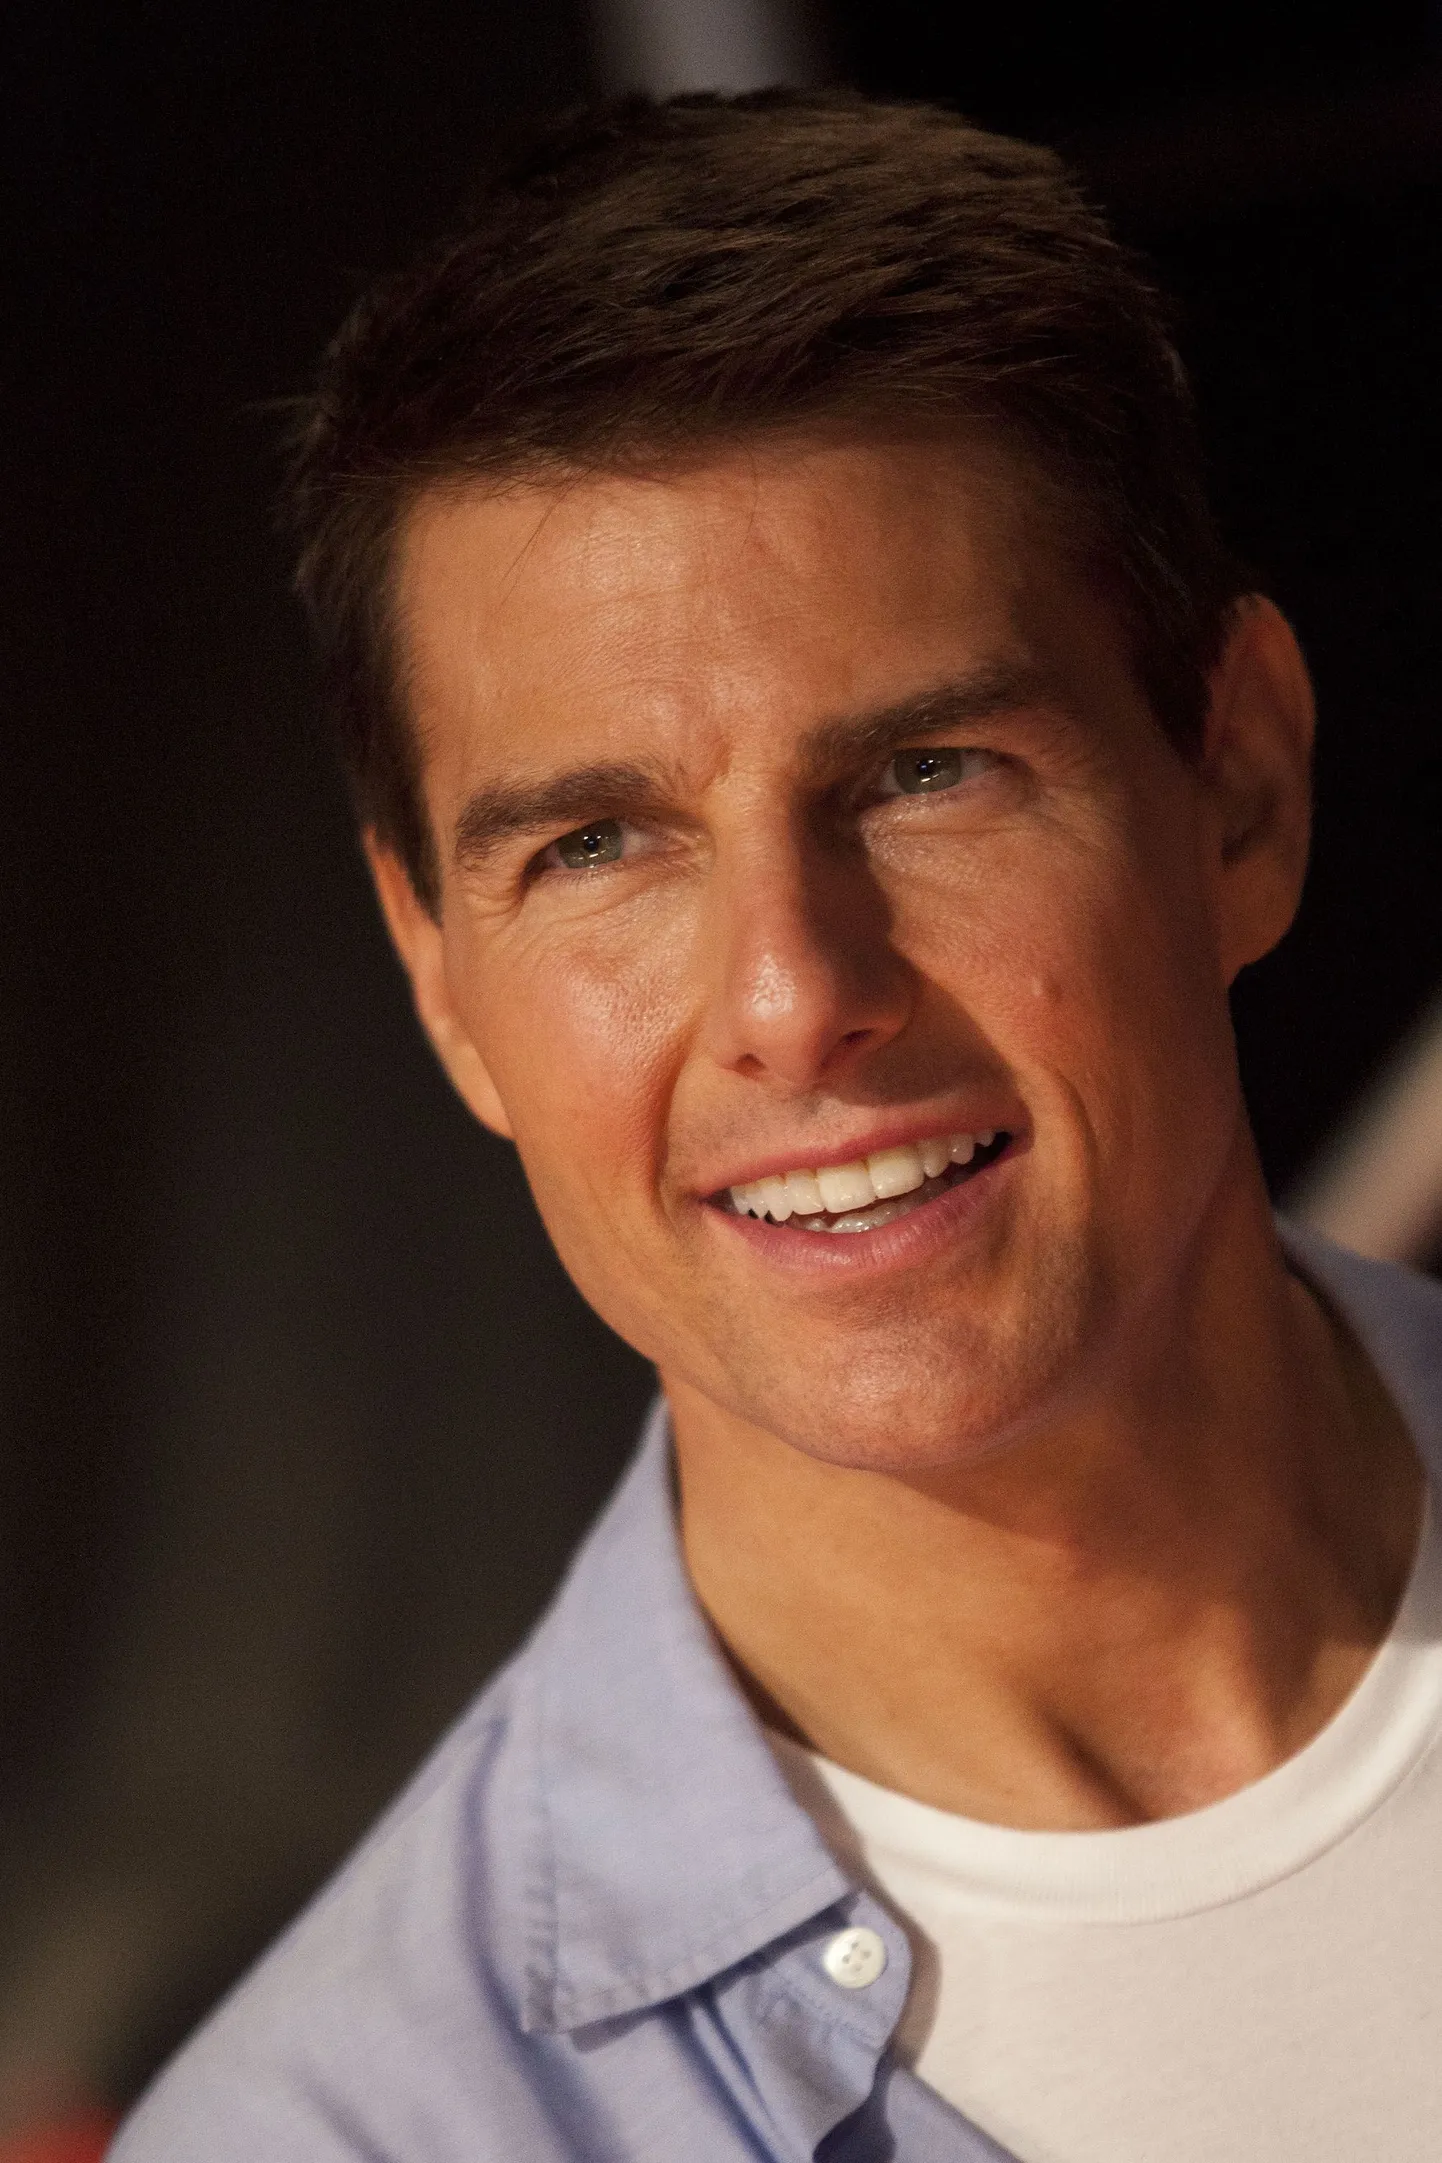 Näitleja Tom Cruise